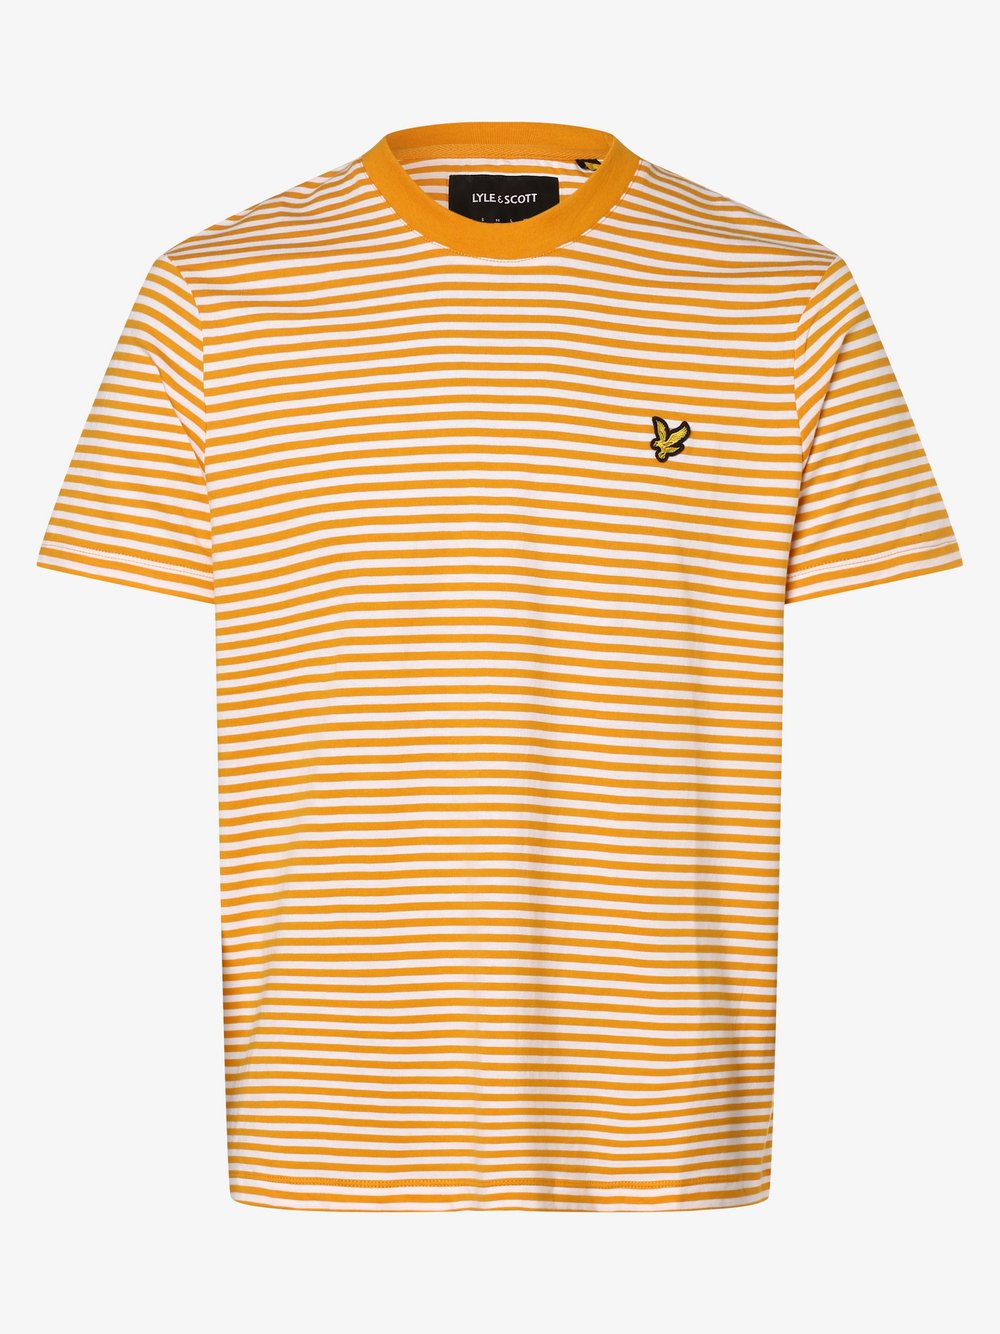 Lyle & Scott - T-shirt męski, żółty